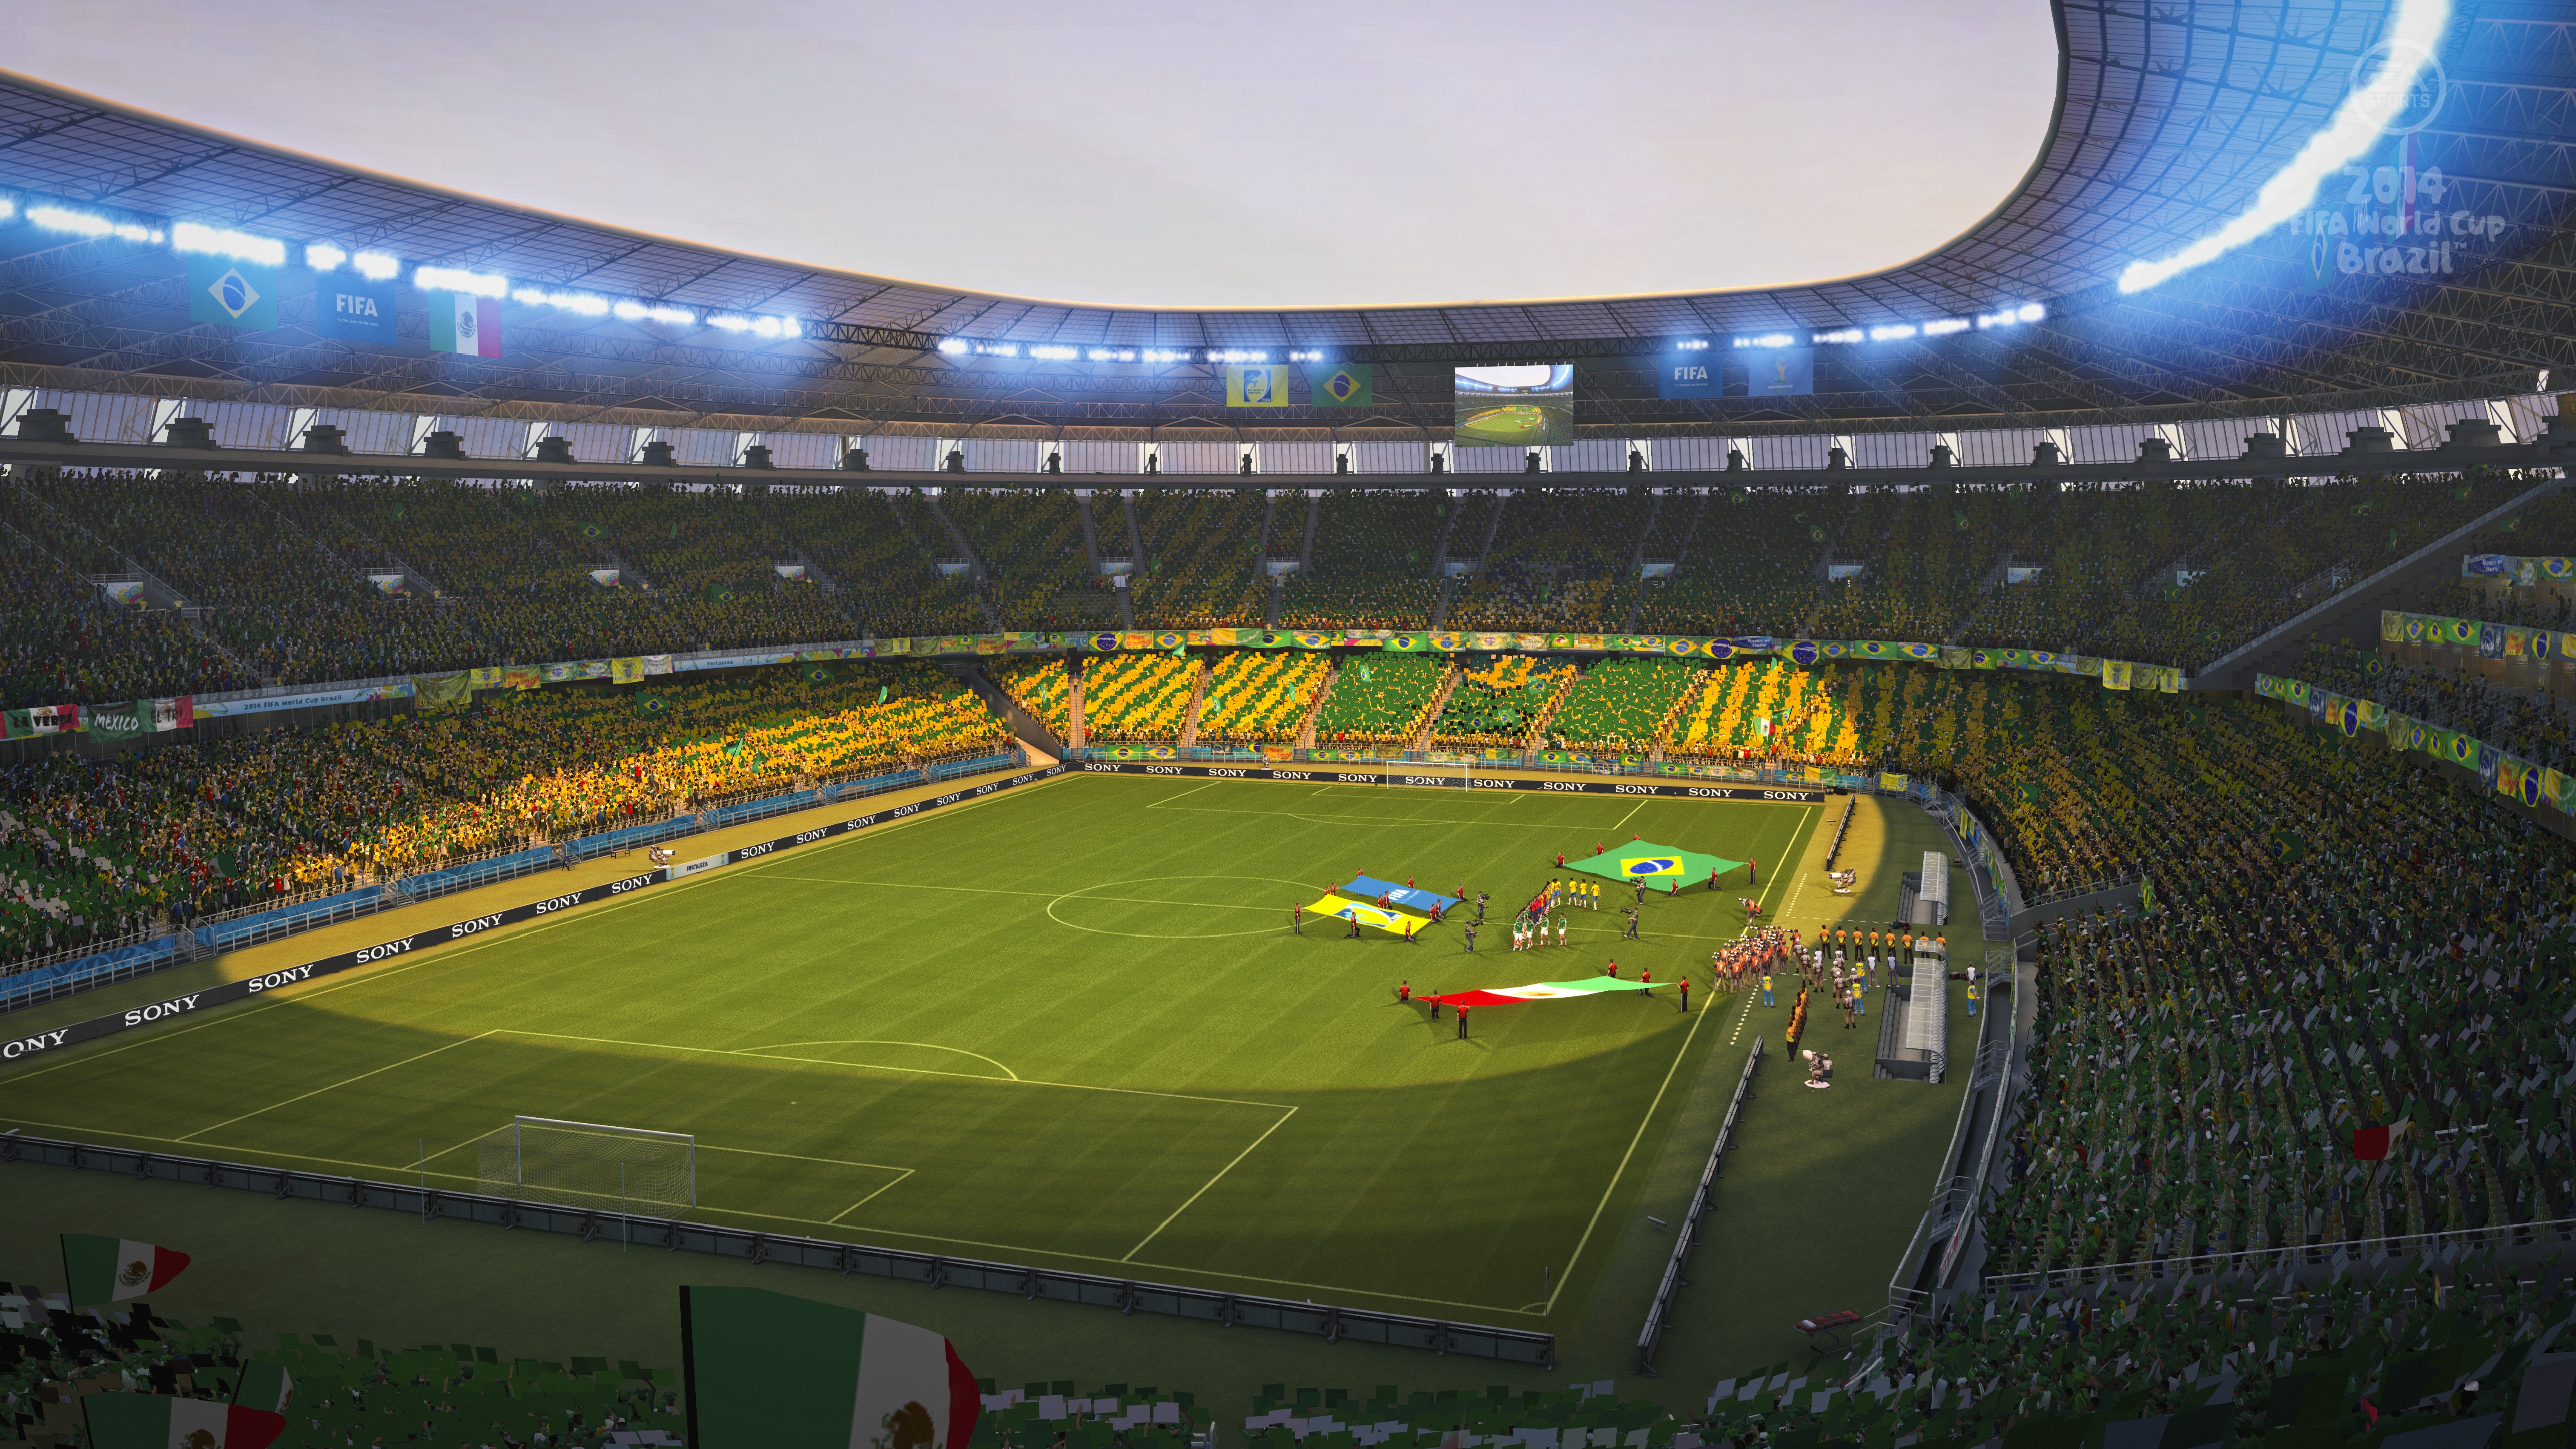 Fifa brazil. 2014 FIFA World Cup Brazil. ФИФА ворлд кап 2014. 2014 FIFA World Cup Brazil для Xbox 360.